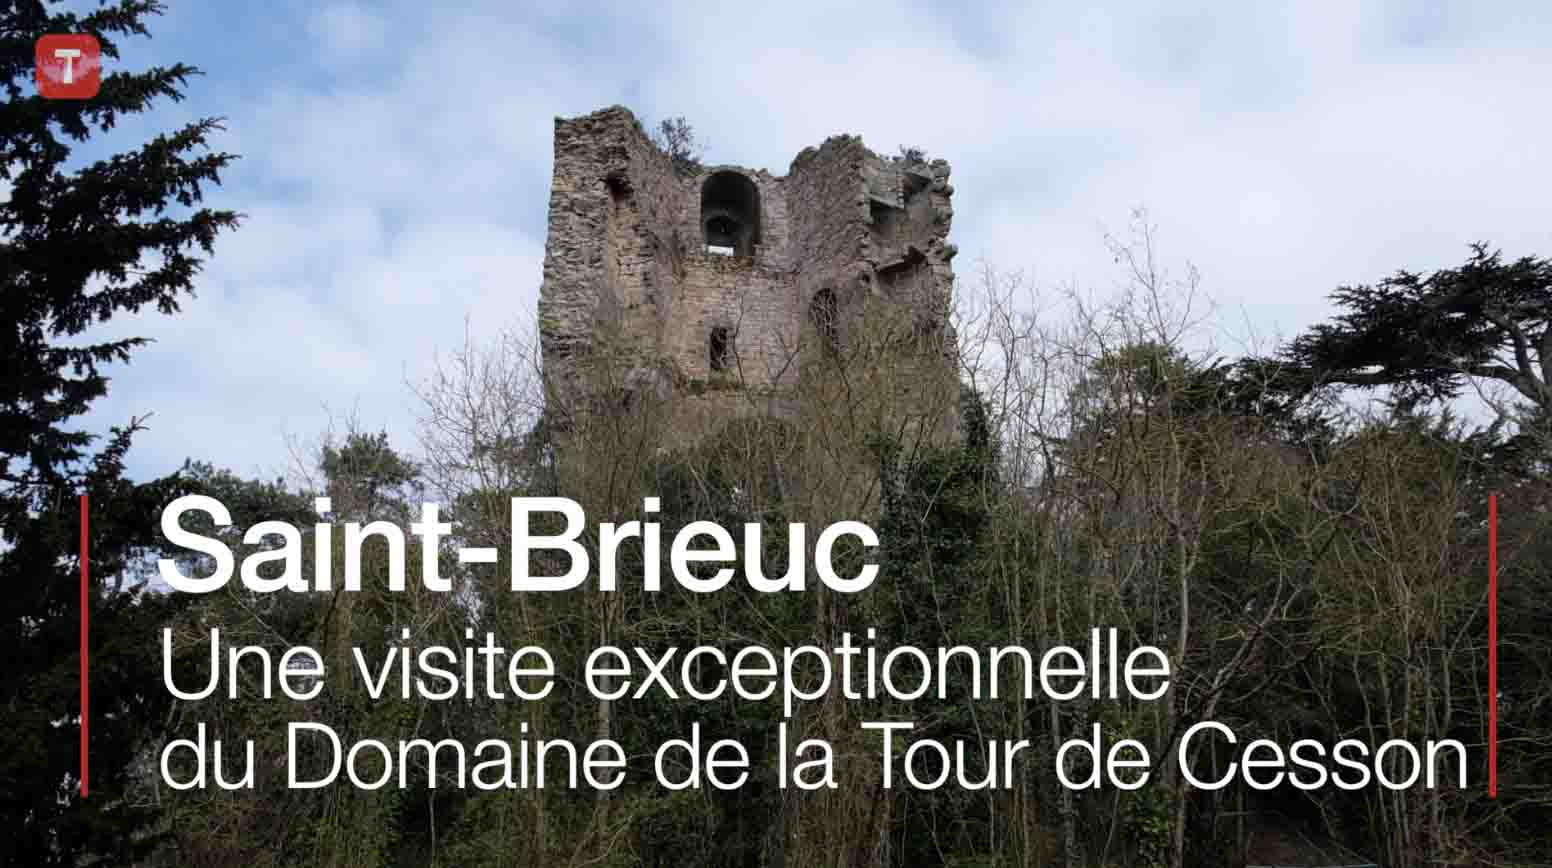 Saint-Brieuc. Une visite exceptionnelle du Domaine de la Tour de Cesson (Le Télégramme)